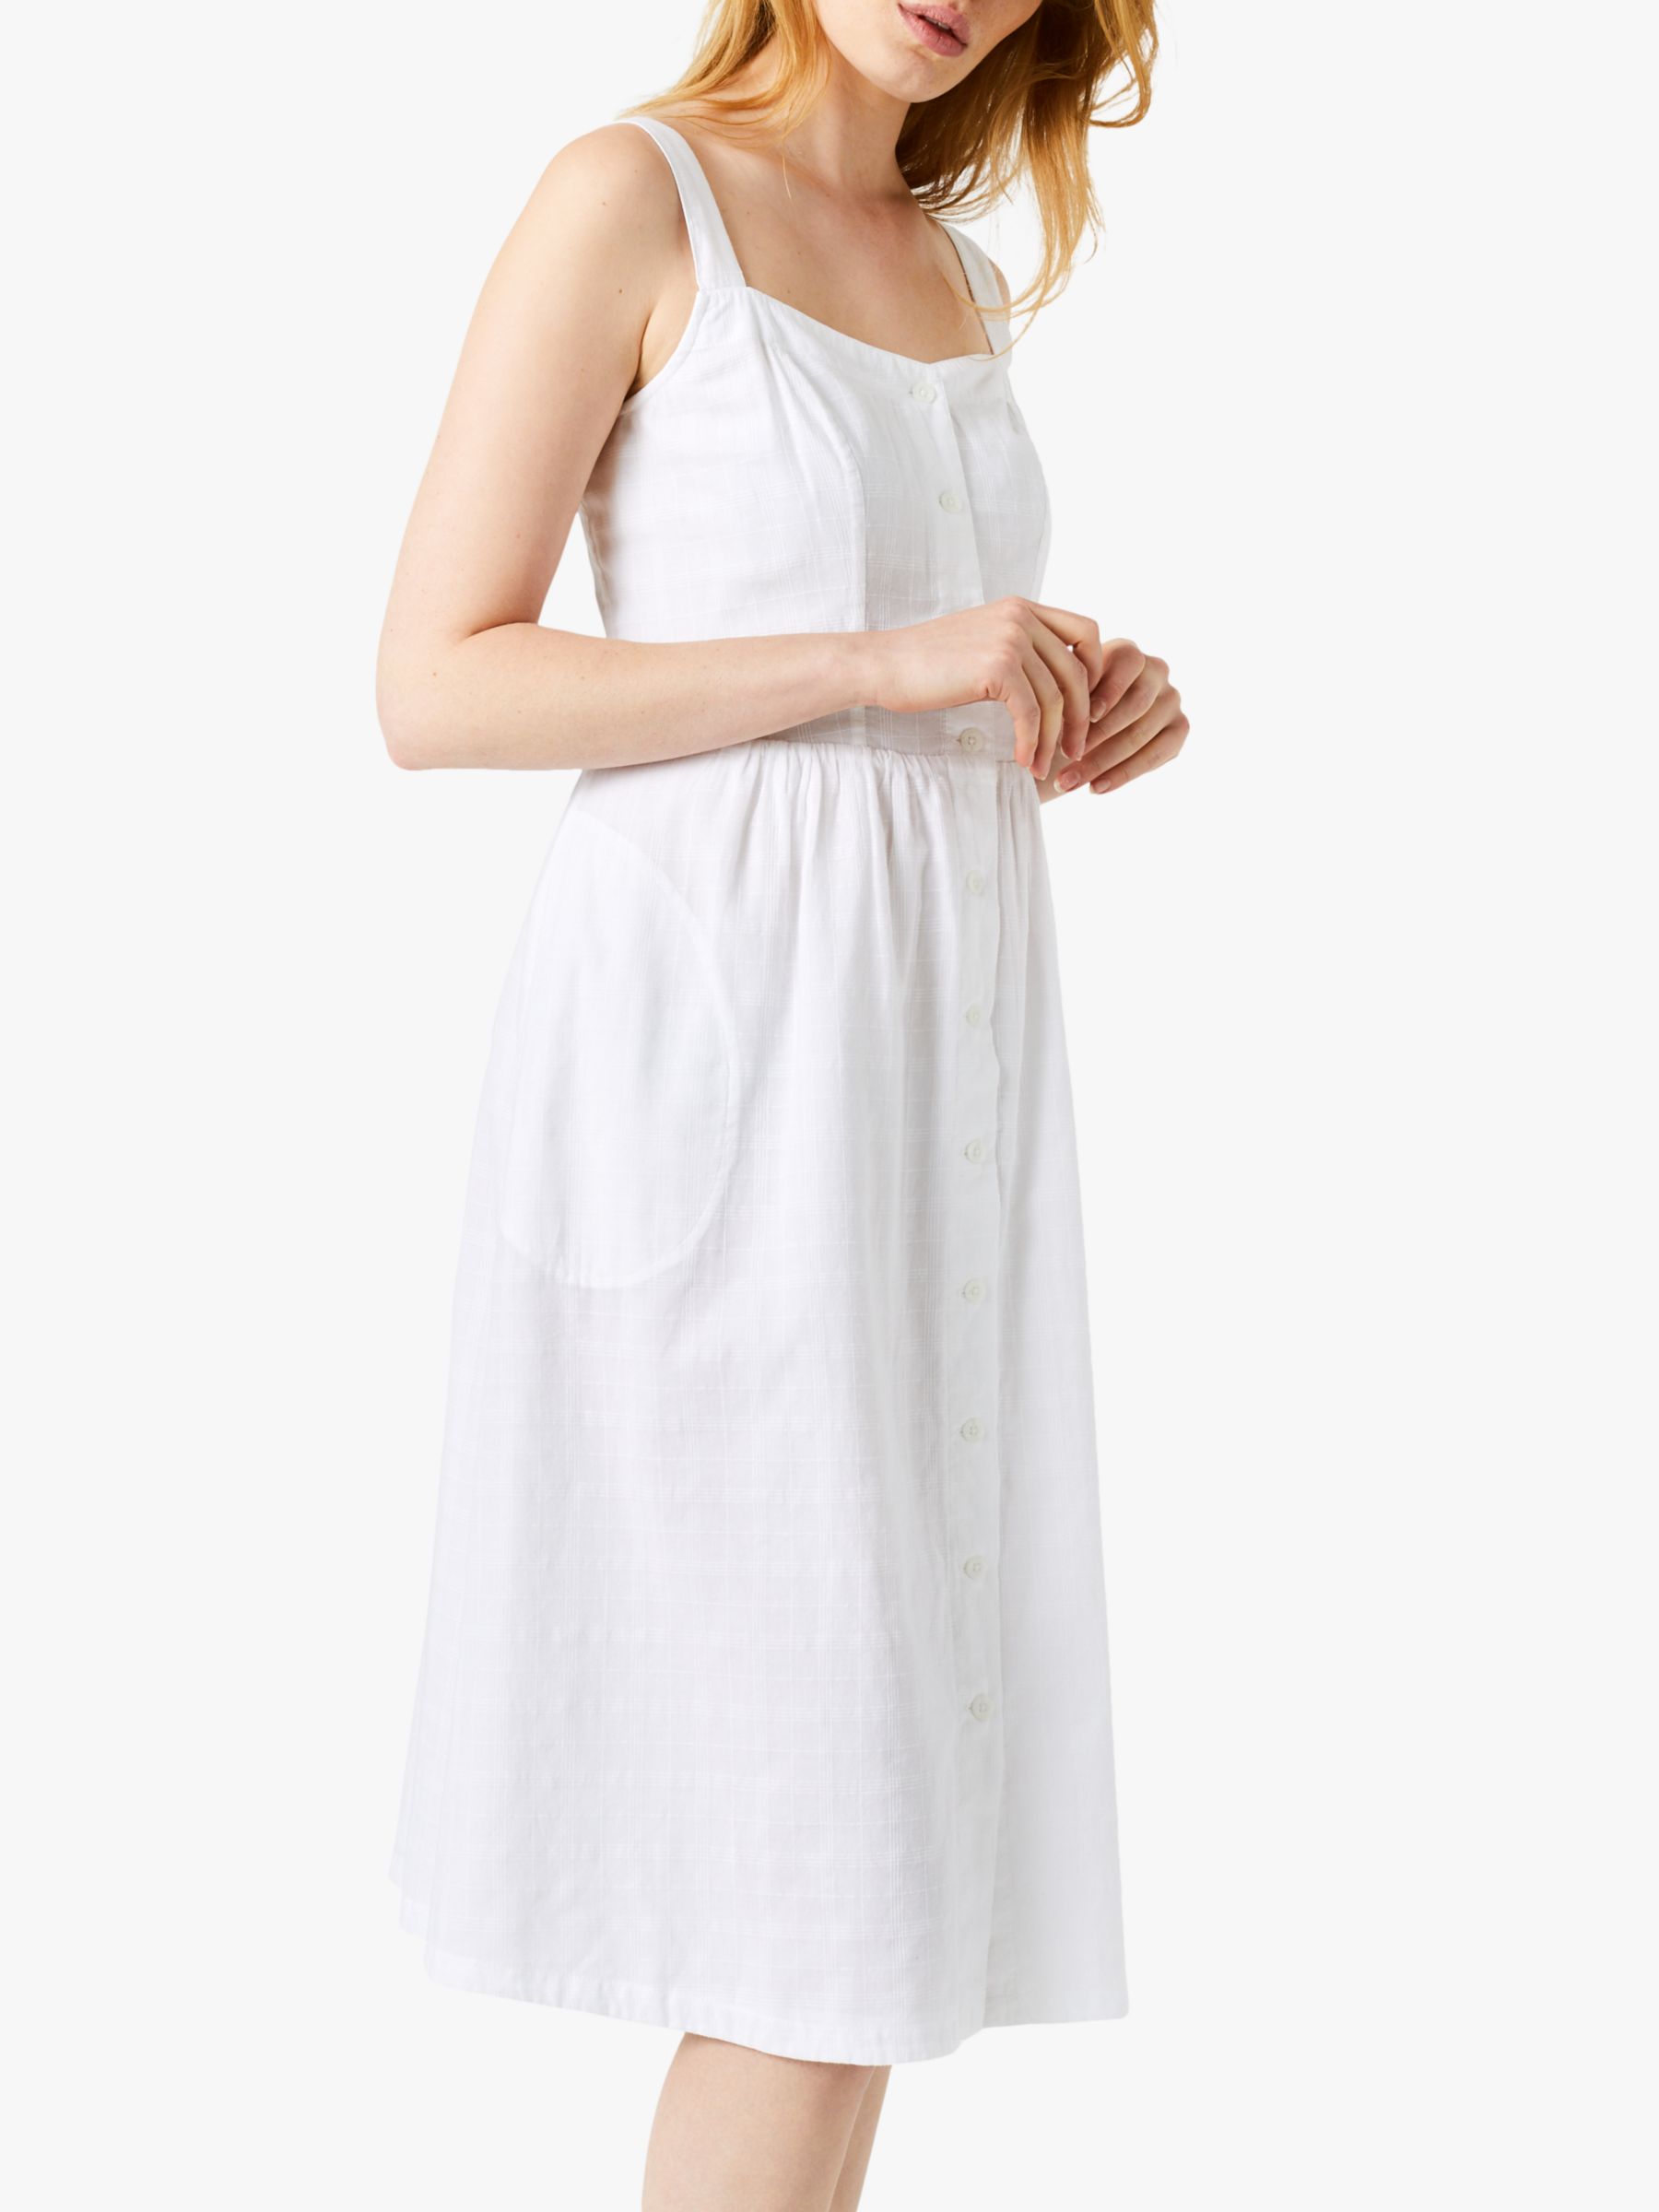 White Stuff Tidal Cotton Dress, White